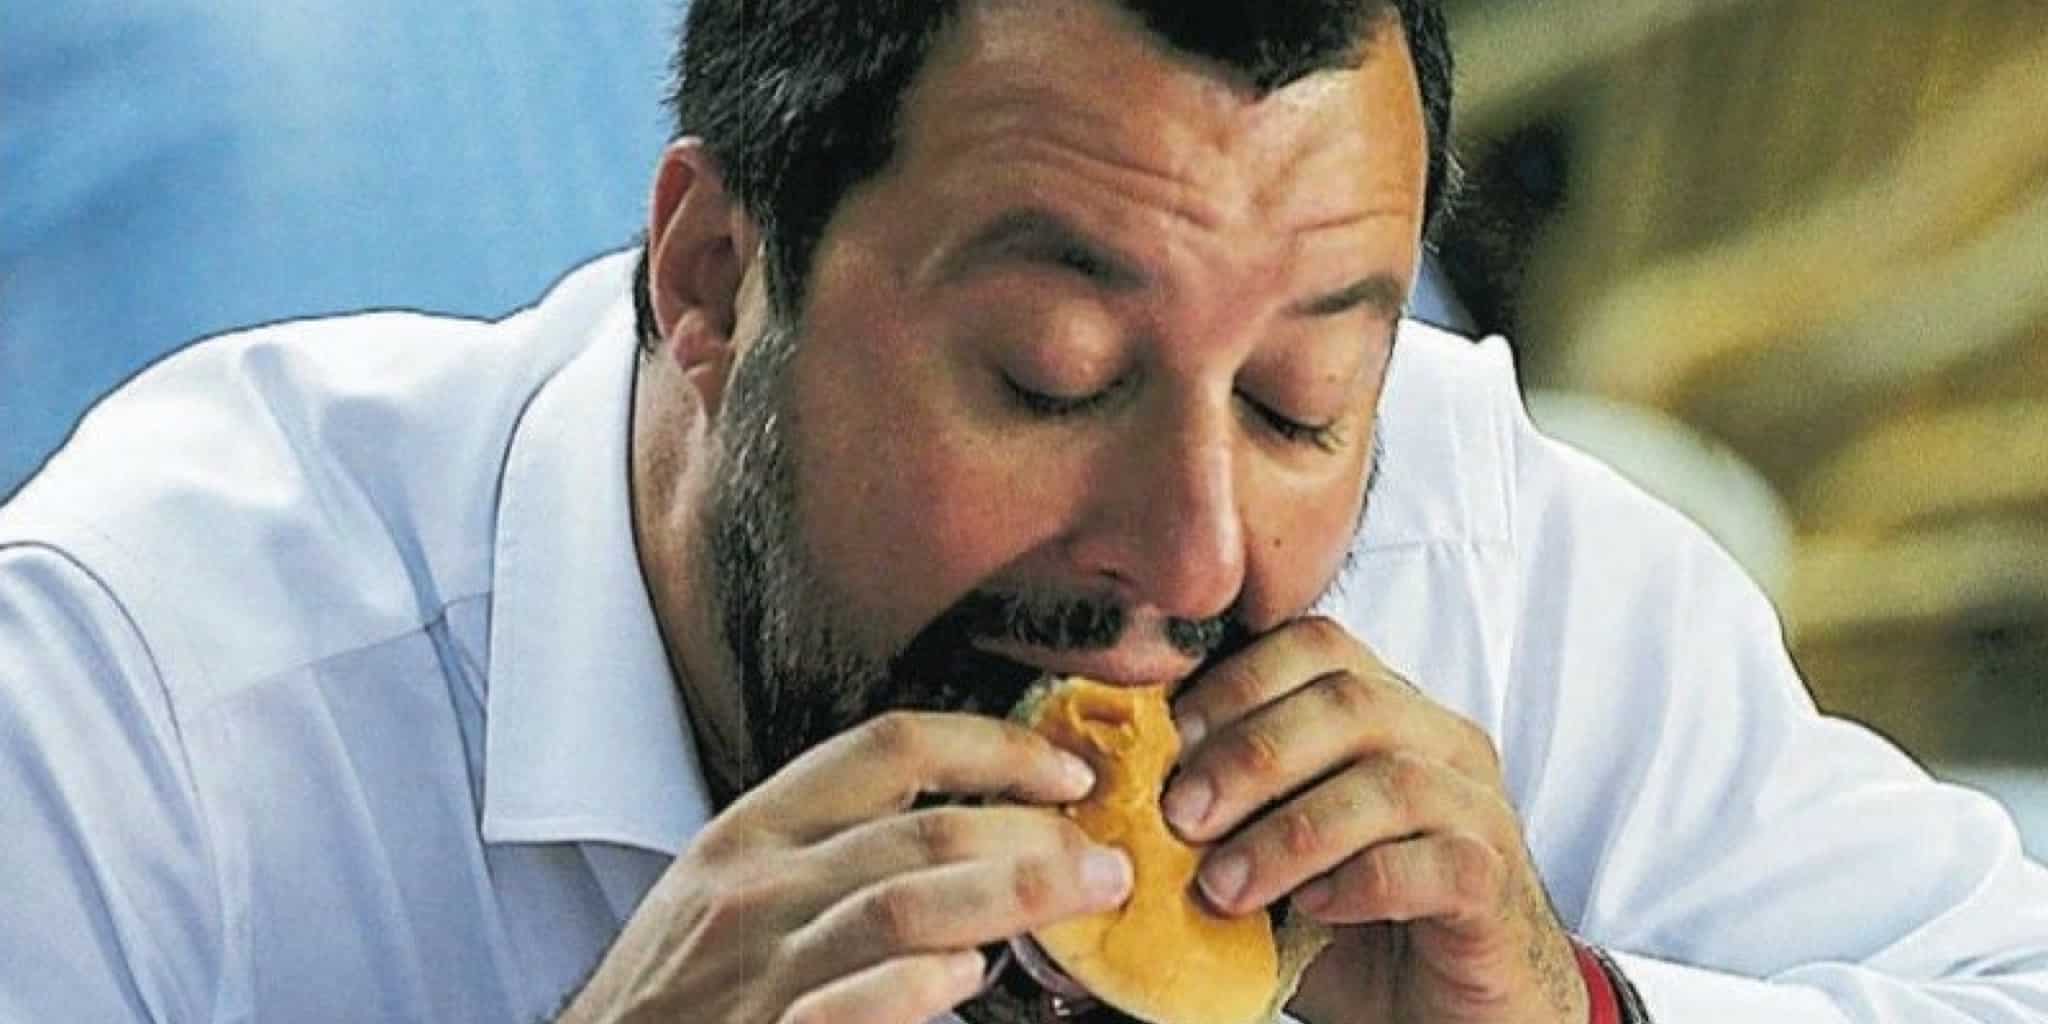 Europee, Matteo Salvini: "In campagna elettorale ho perso 4 chili, sono sicuro di finire sopra Forza Italia"